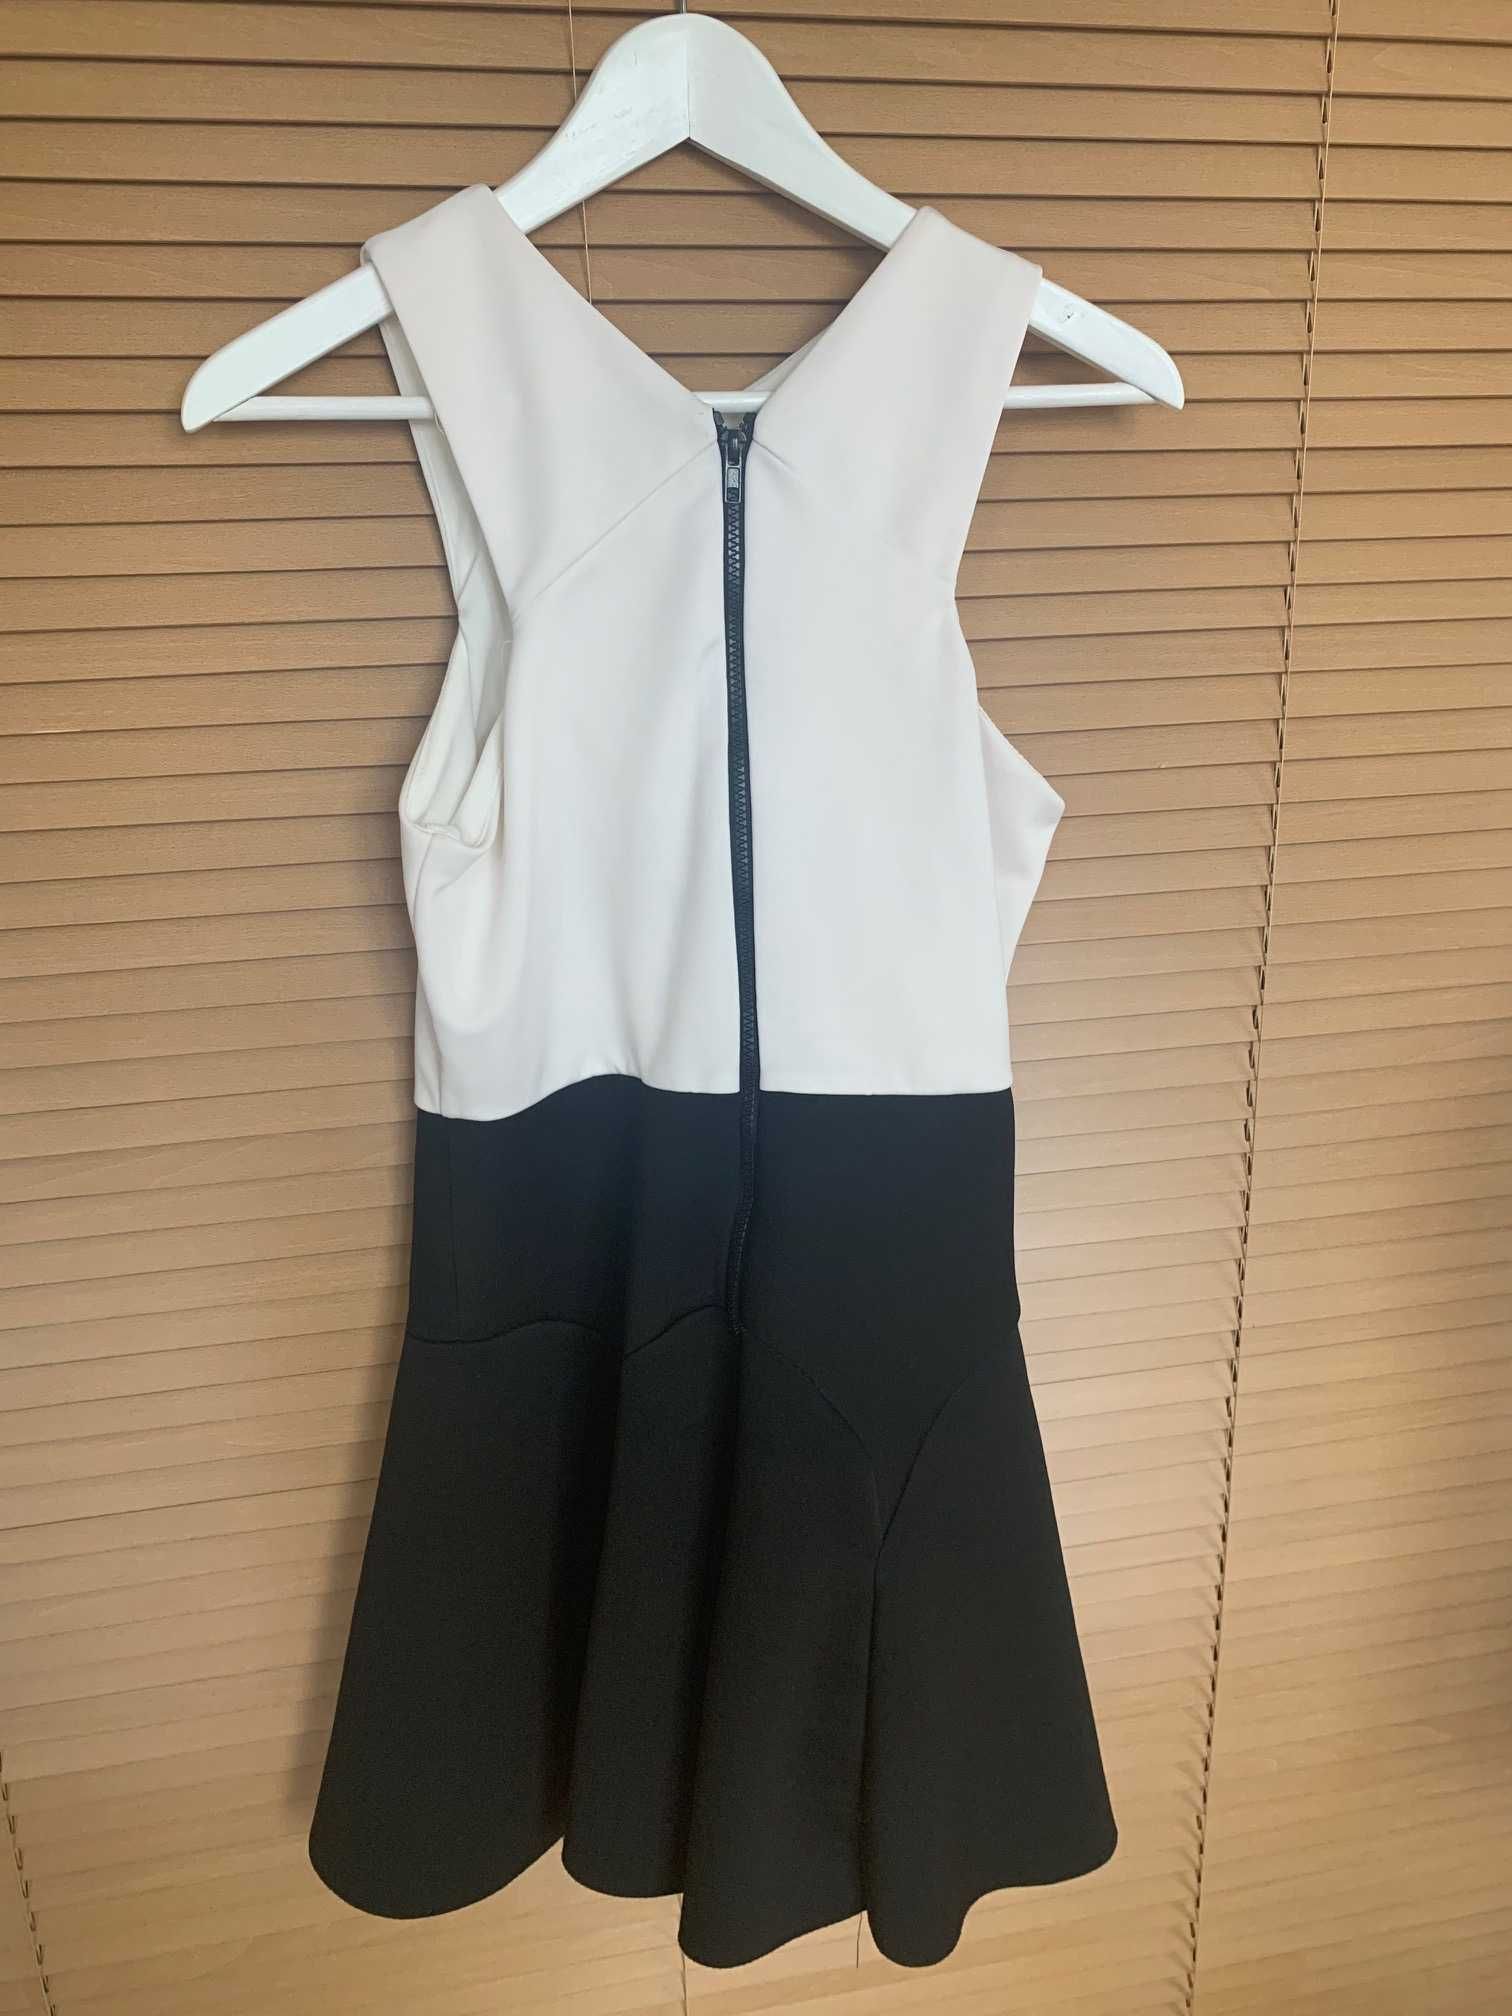 Topshop sukienka pianka neopren EUR 40 biały czarny